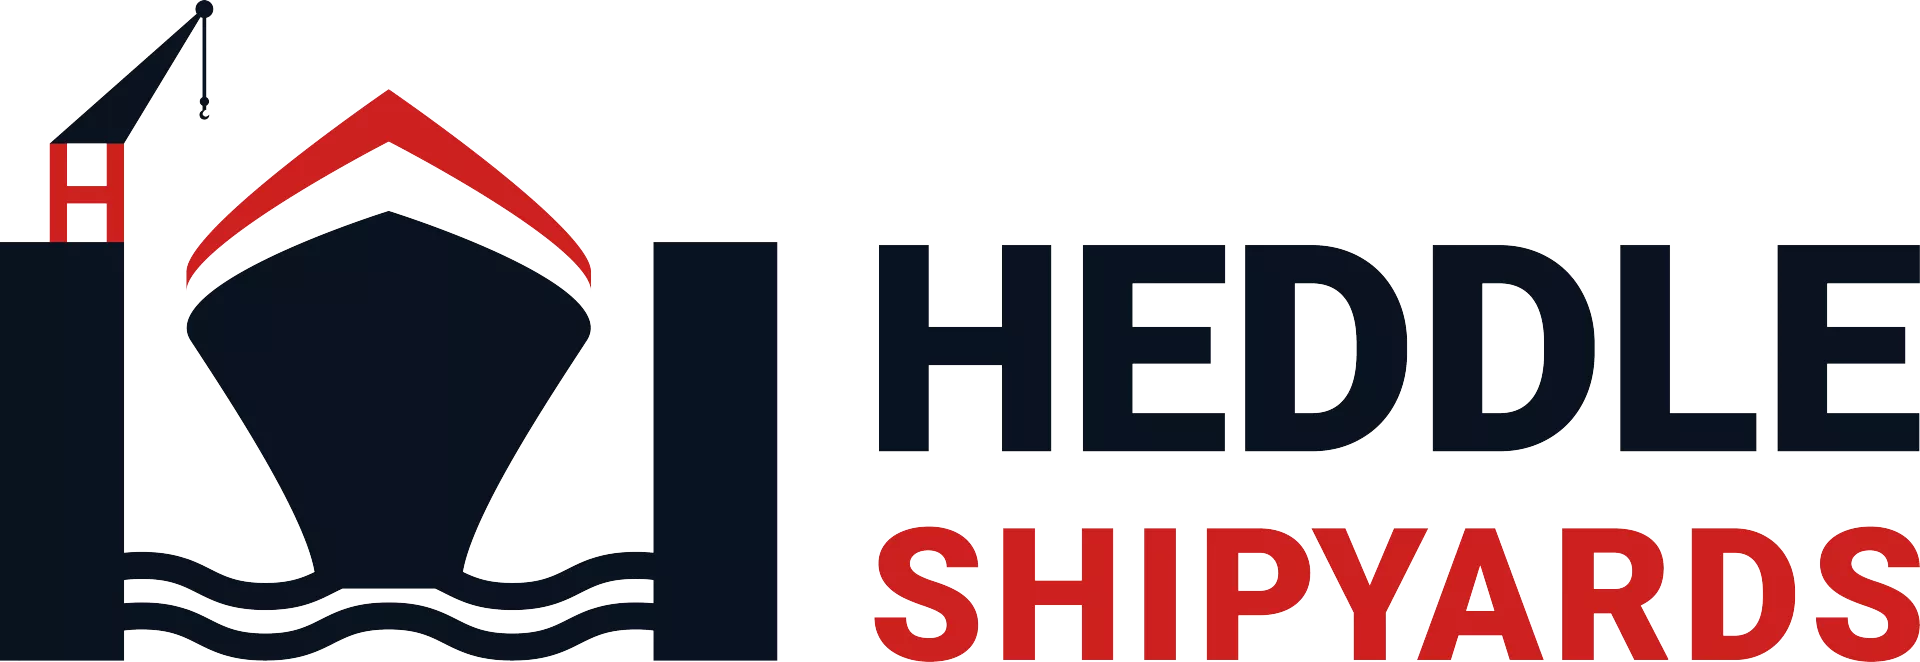 Heddle Shipyards Logo